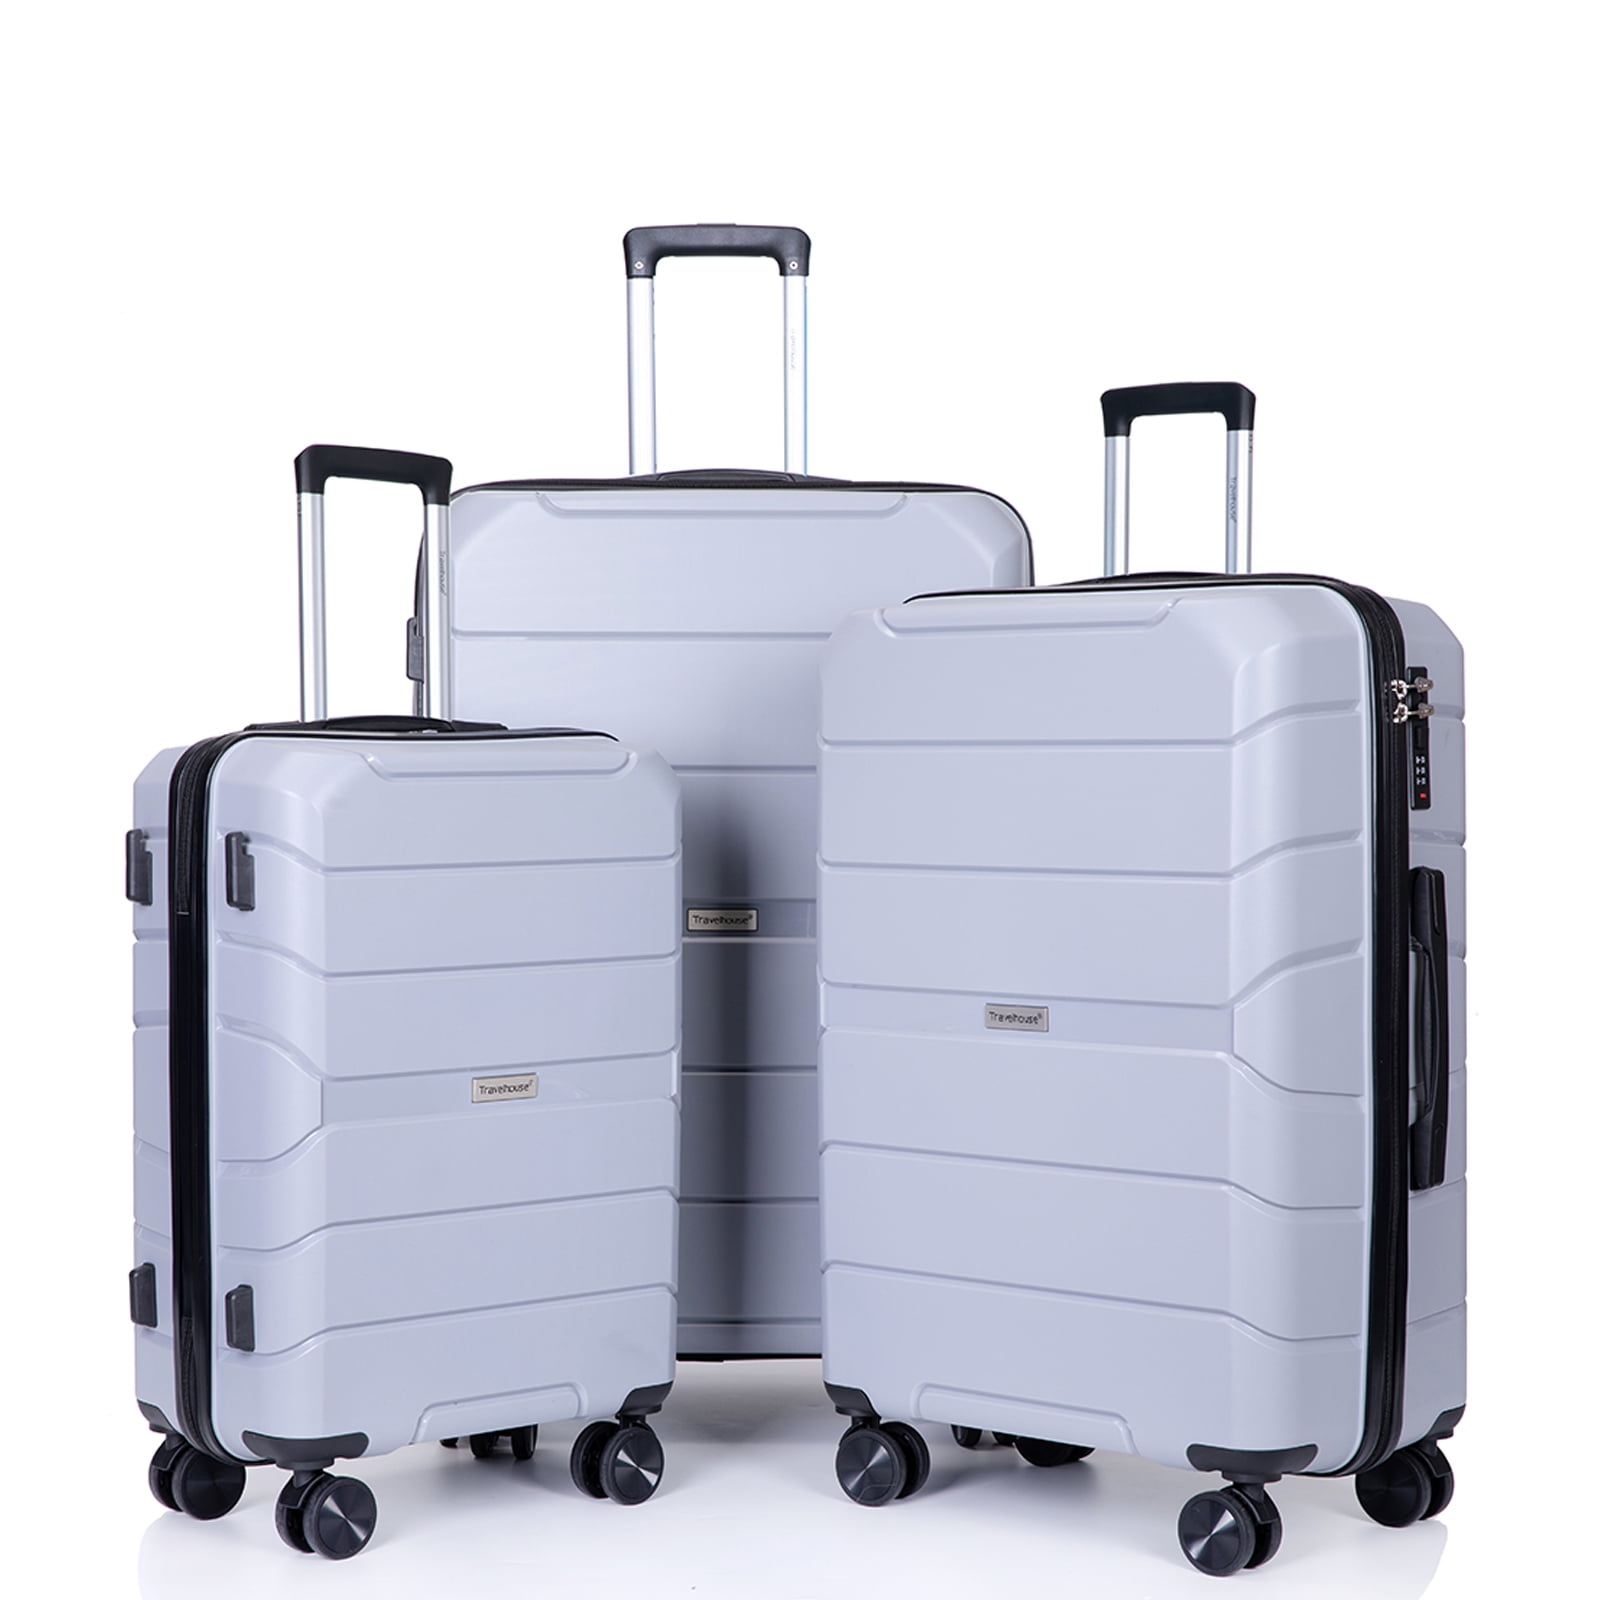 Travelhouse Luggage 3 Piece Set Hardshell Lightweight Suitcase